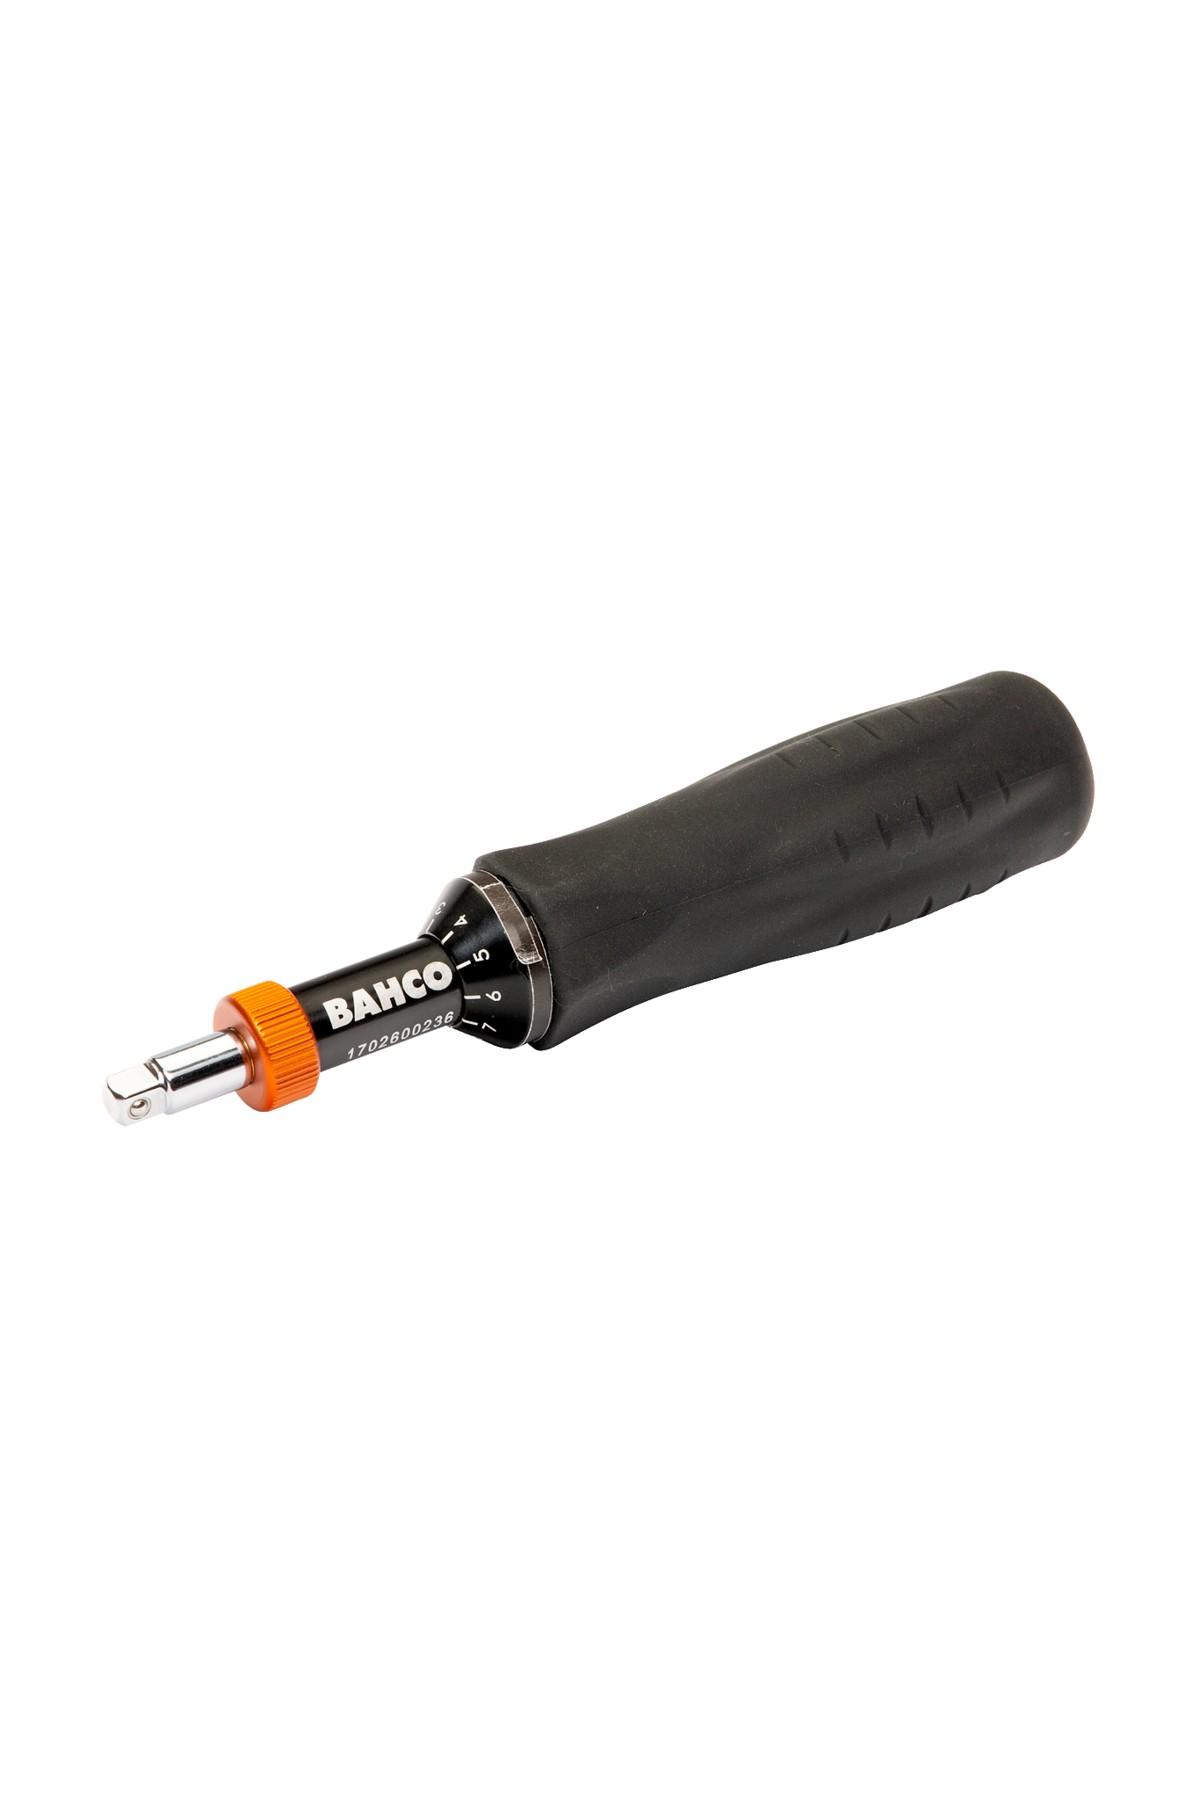 Torque screwdriver 10-120cNm